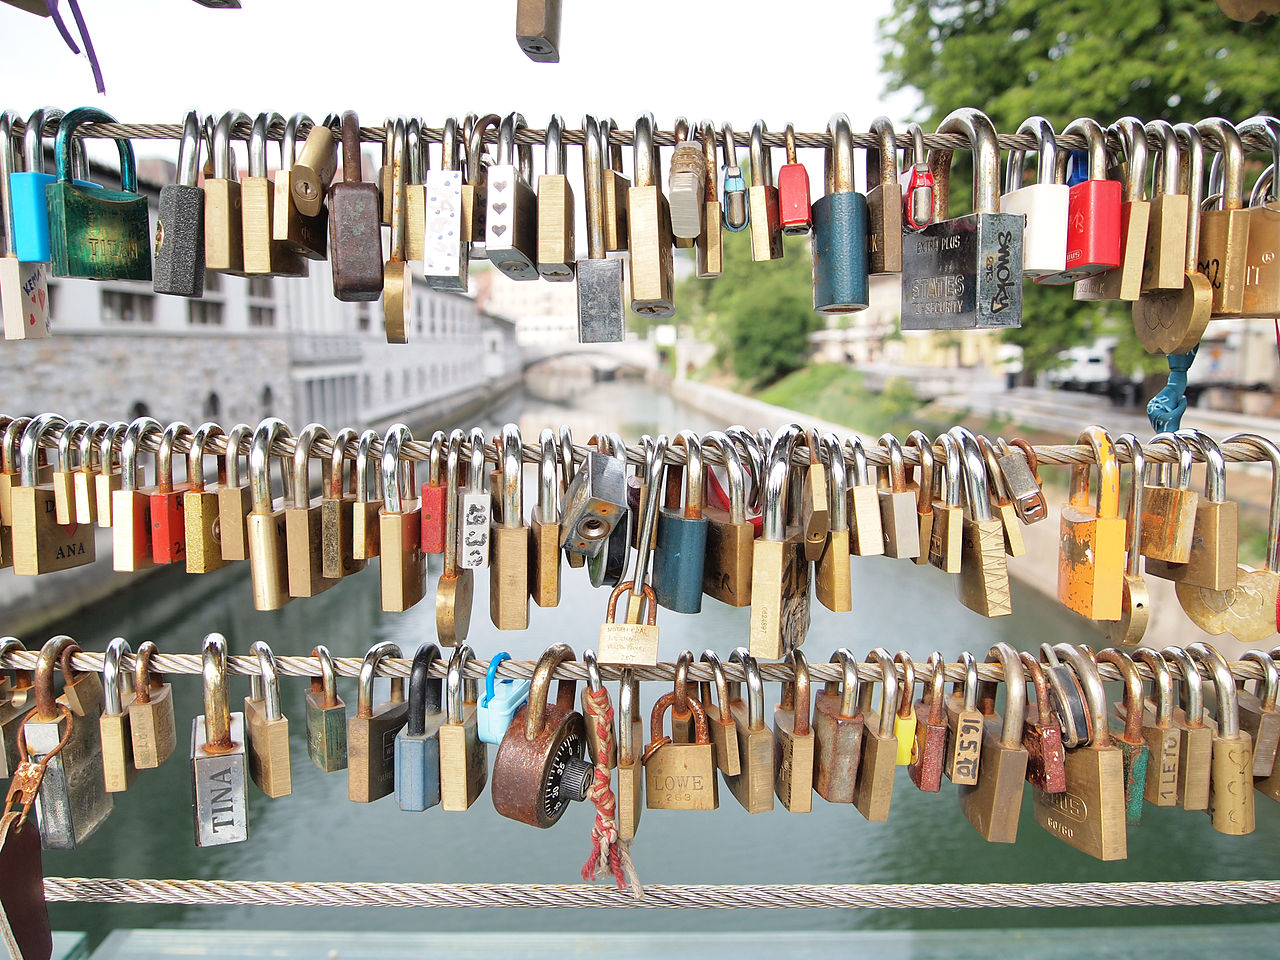 "올해도 다시 한 번 약속과 실천을 기원합니다. 자물쇠만큼 약속과 실천을 잘 설명하는 것은 없을 것입니다. 슬로베니아 류블랴나(Ljubljana) 도살자 다리(Butchers’ Bridge)에 있는 사랑의 자물쇠 사진을 올립니다."